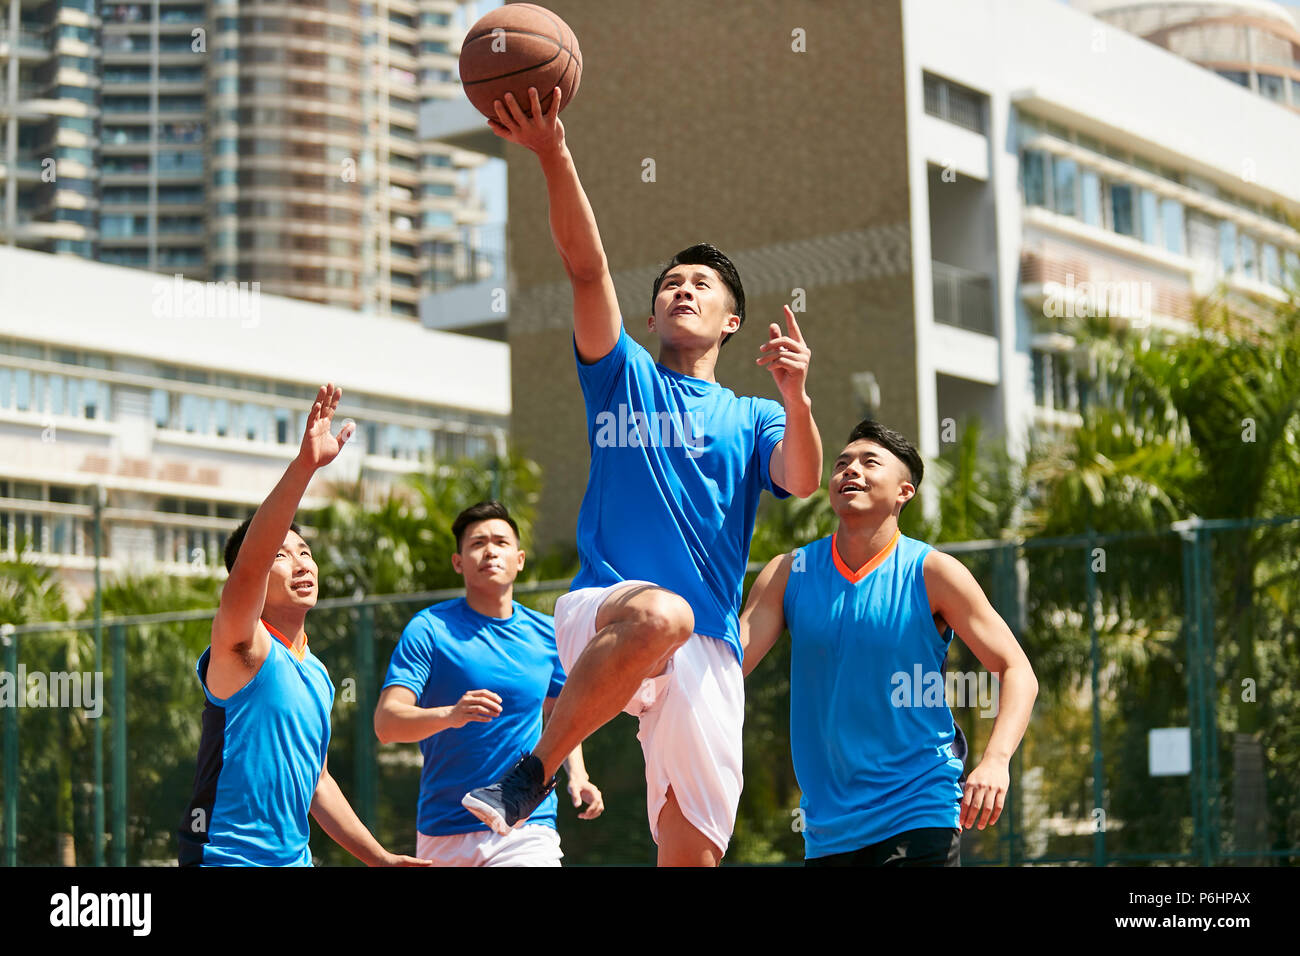 Les jeunes mâles adultes asiatiques player jouer au basket-ball sur une cour en plein air en milieu urbain. Banque D'Images